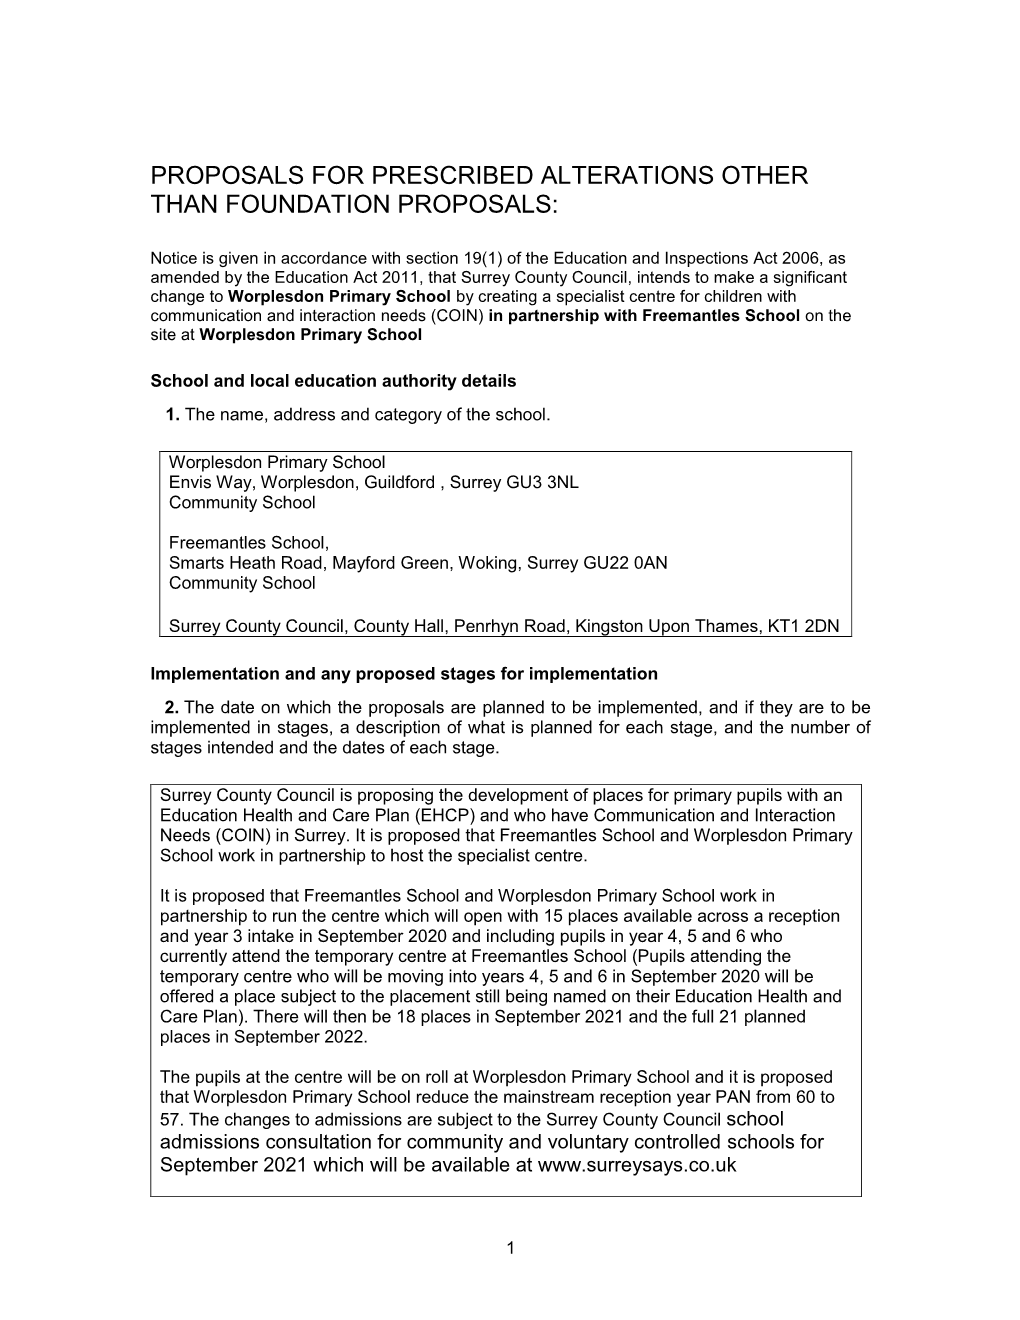 Worplesdon & Freemantles Statutory Notice (Full)